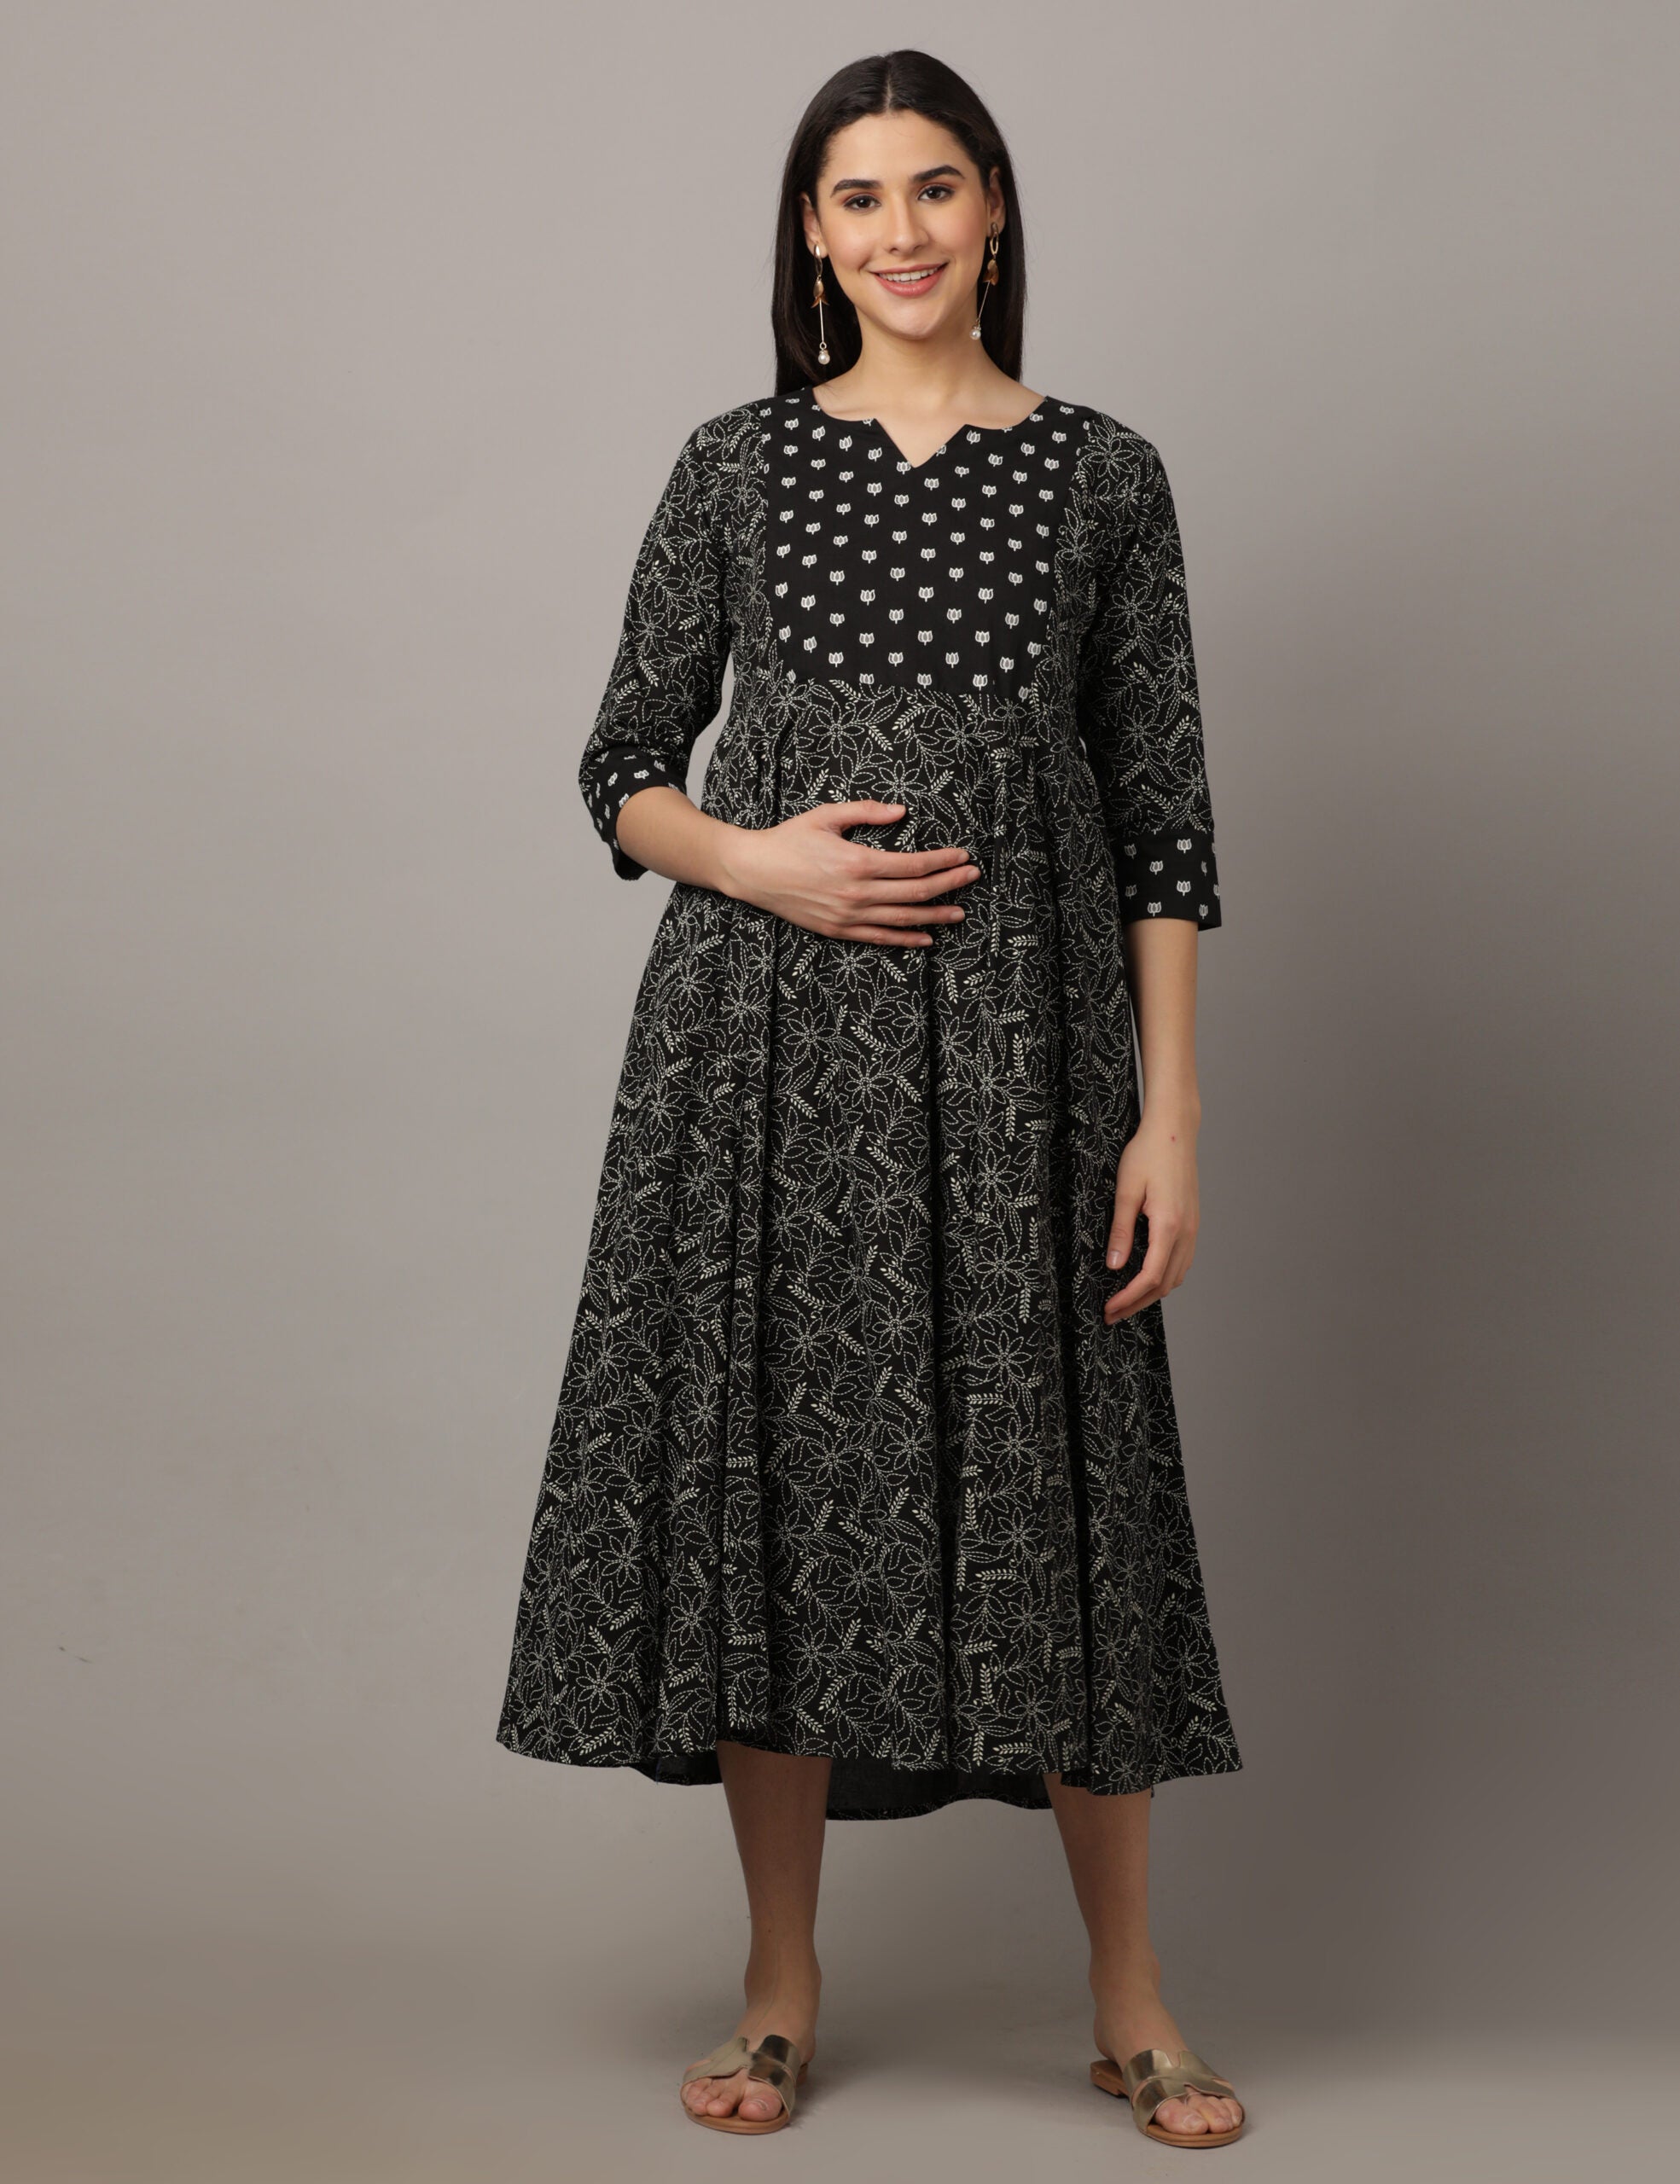 KEYBANG Maternity Dress Women Sleeveless Shoulder Clasp Butterfly Print  Cotton And Linen Dress Purple - Walmart.com